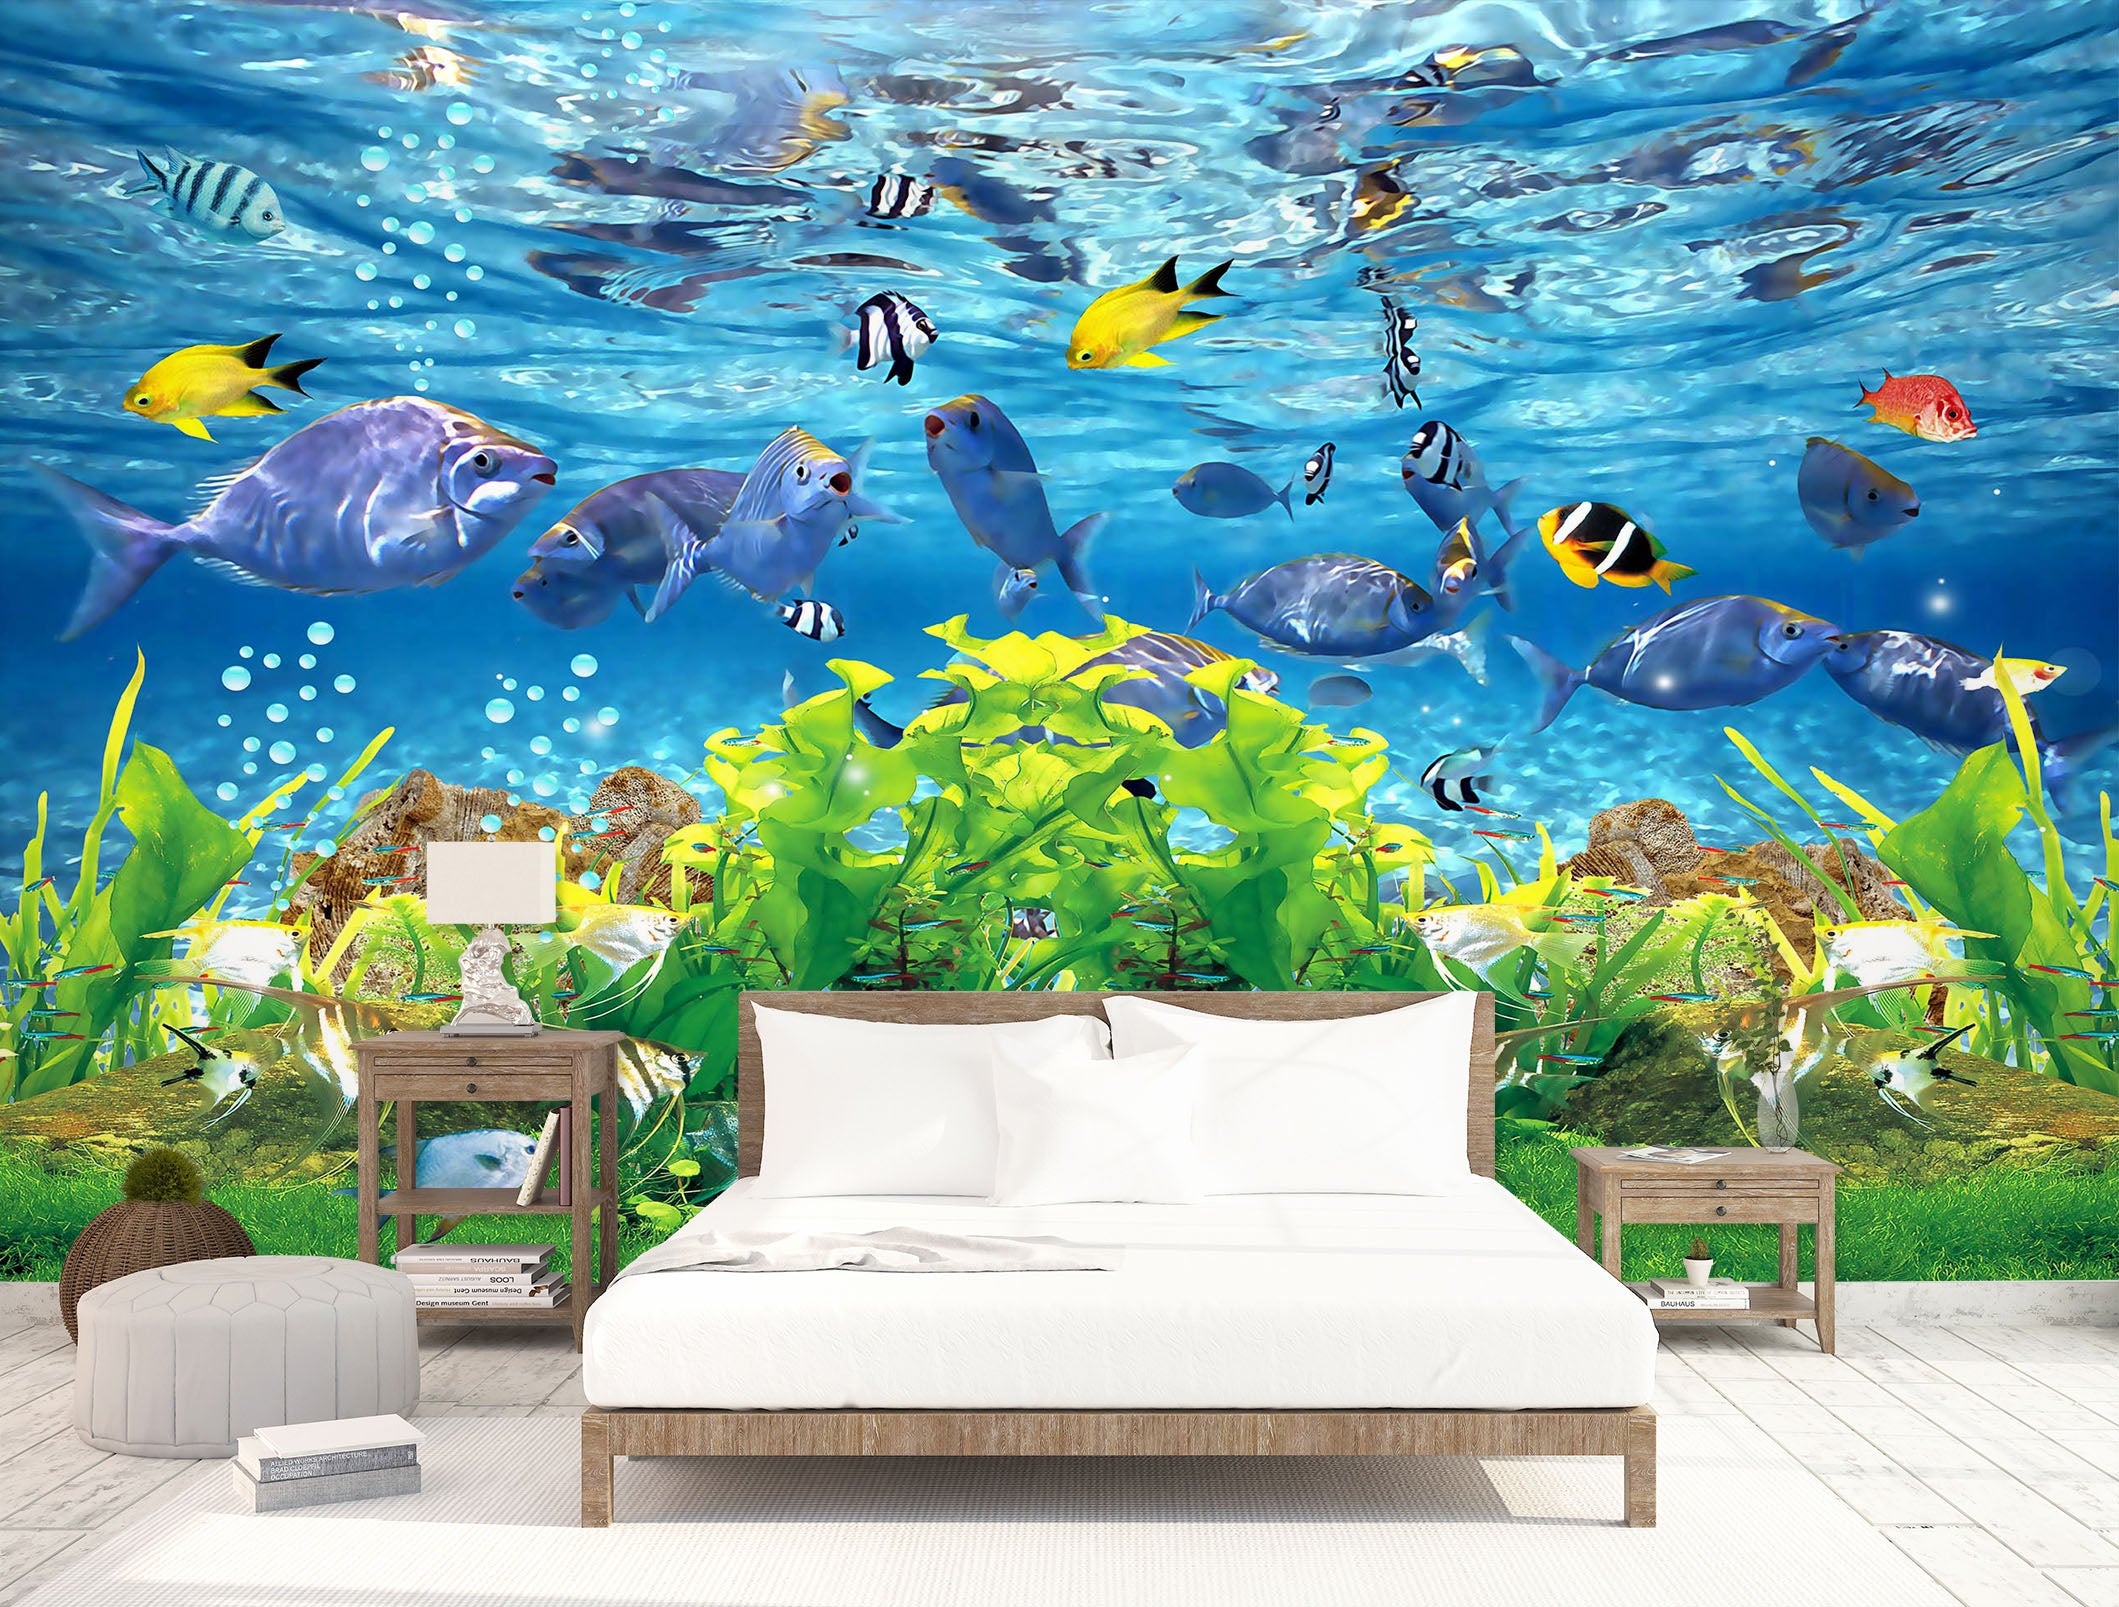 3D Underwater Games 1624 Wall Murals